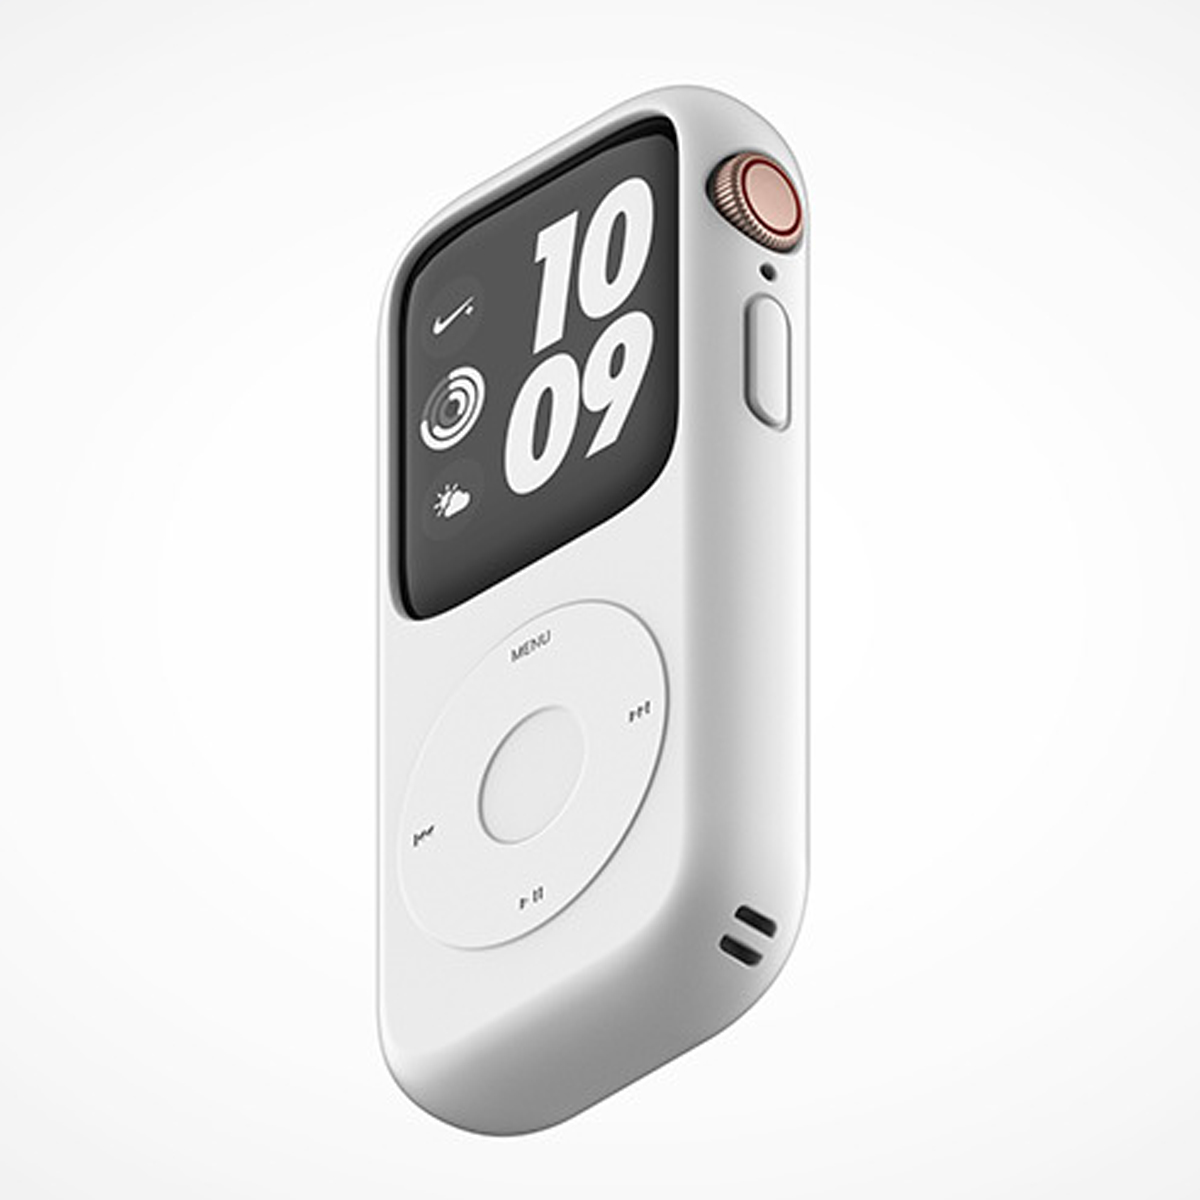 「Apple Watch」を「iPod nano」にできるケースが話題に 